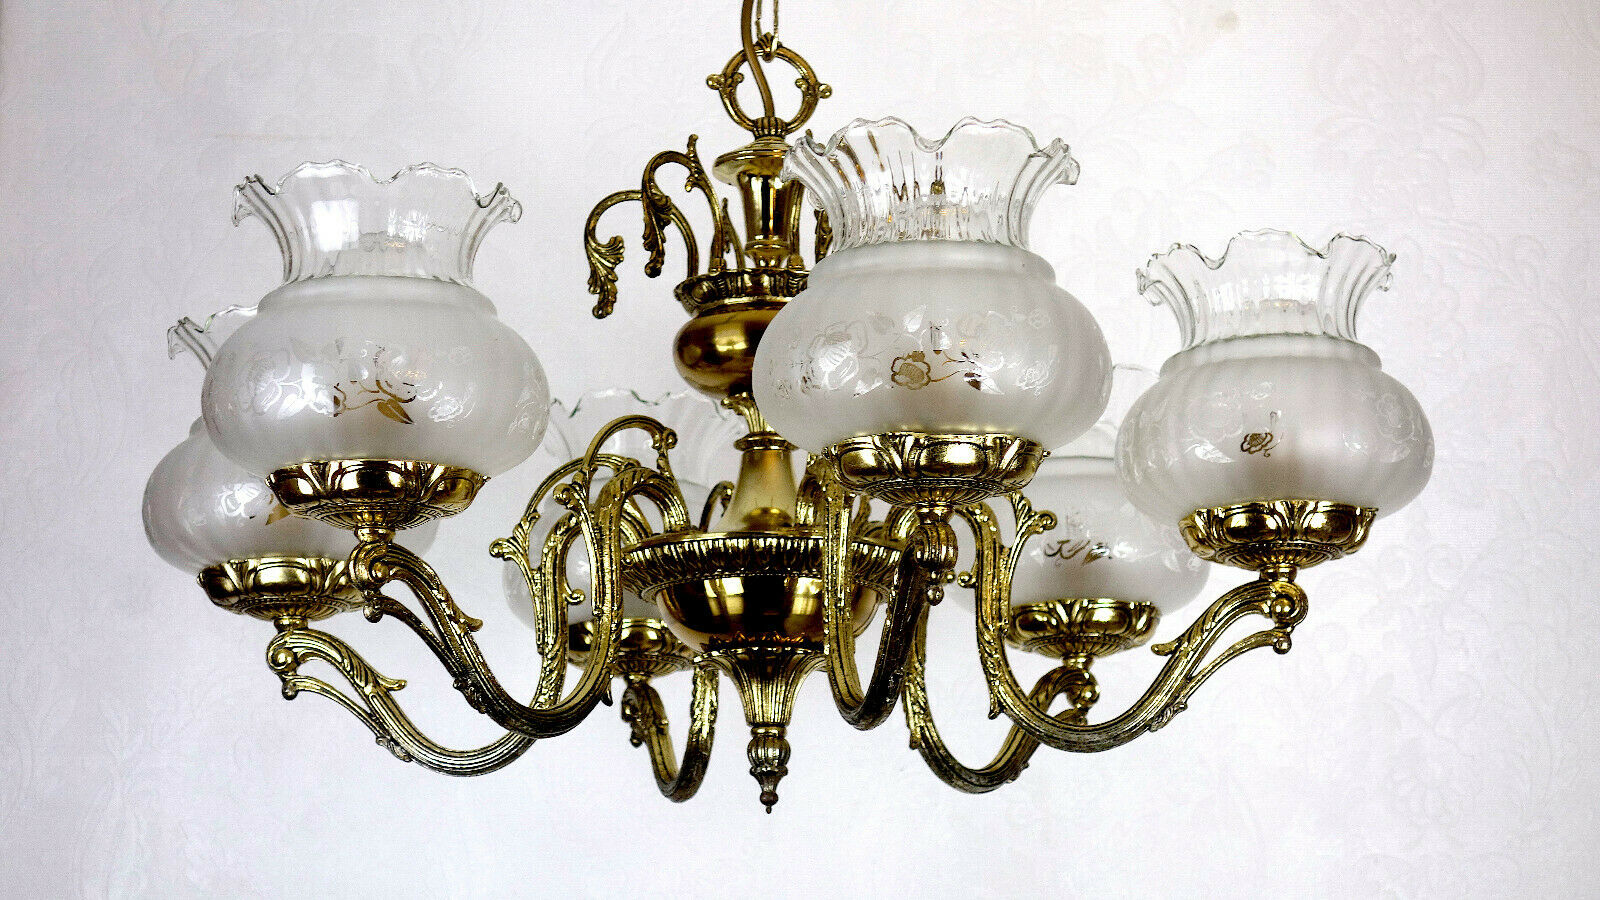 6 Hochwertige Antik Flammig Kronleuchter, Glas – Spanische Leuchten Messing Lüster